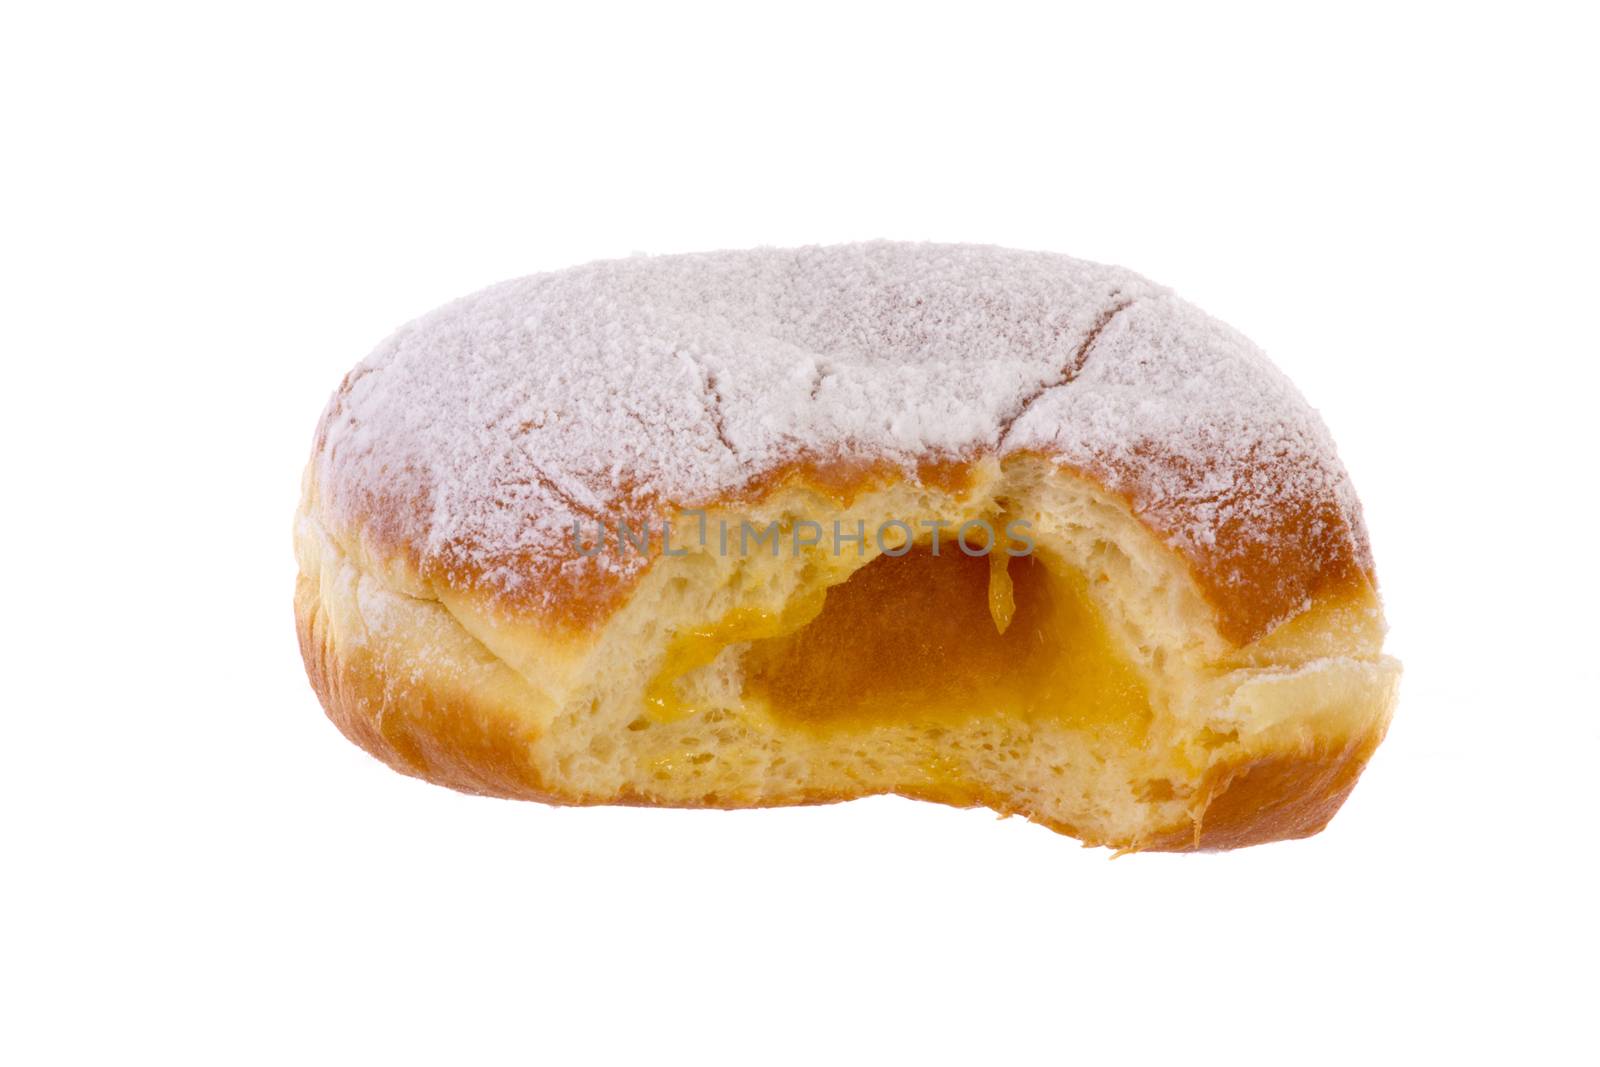 Krapfen Berliner Pfannkuchen Bismarck Donut by gwolters